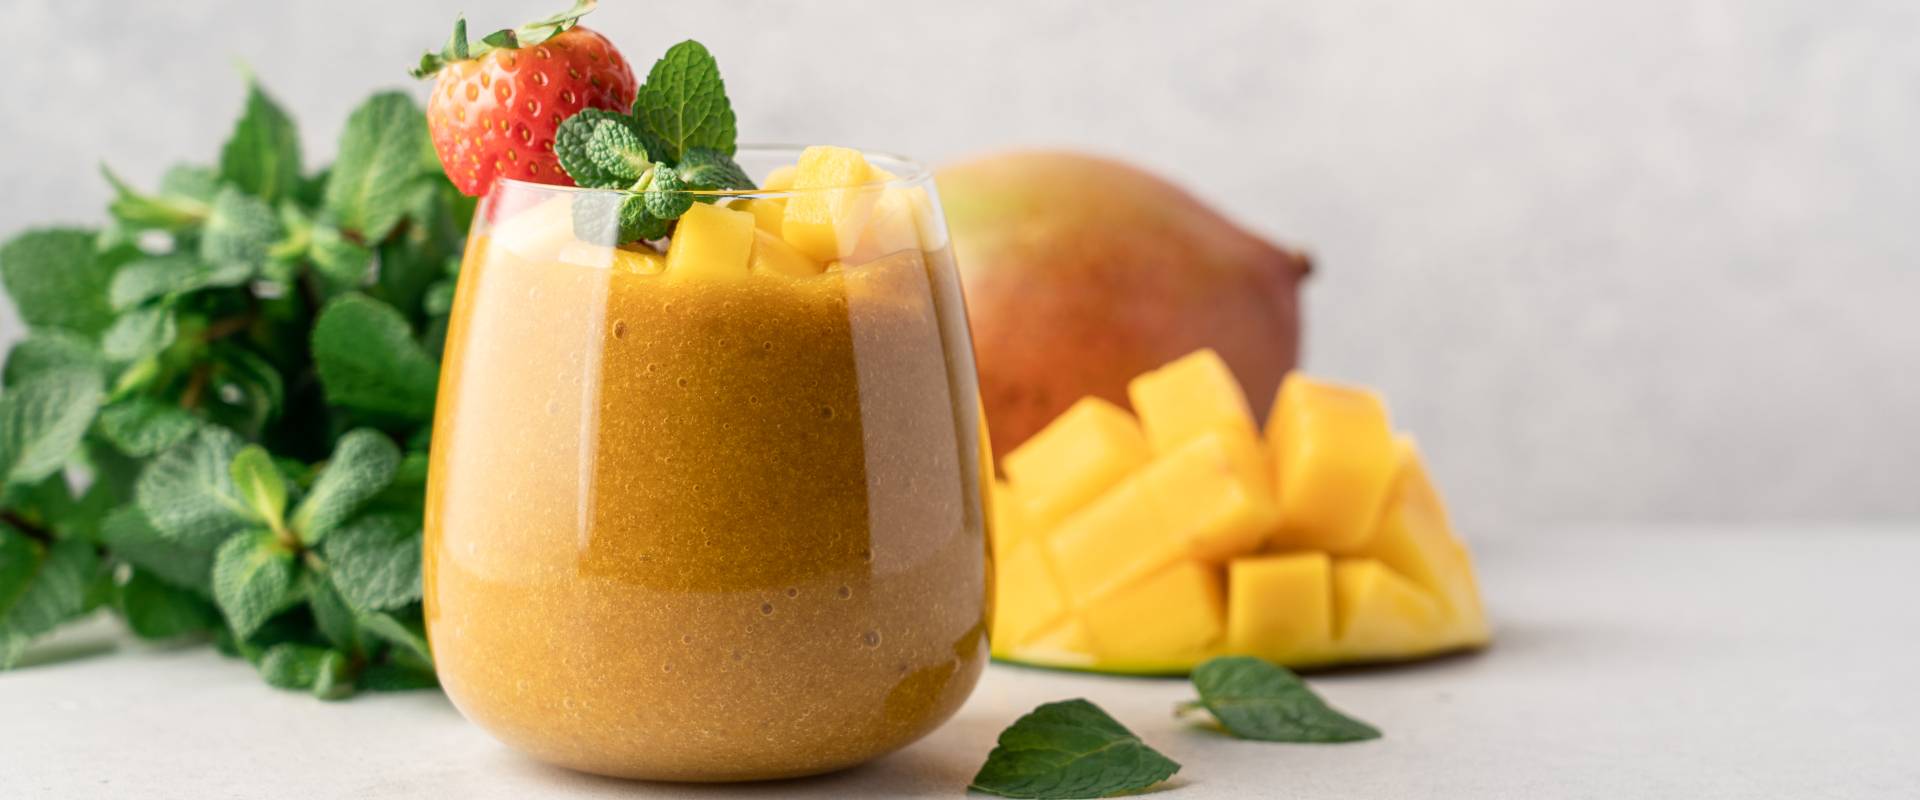 epres-mangos-smoothie